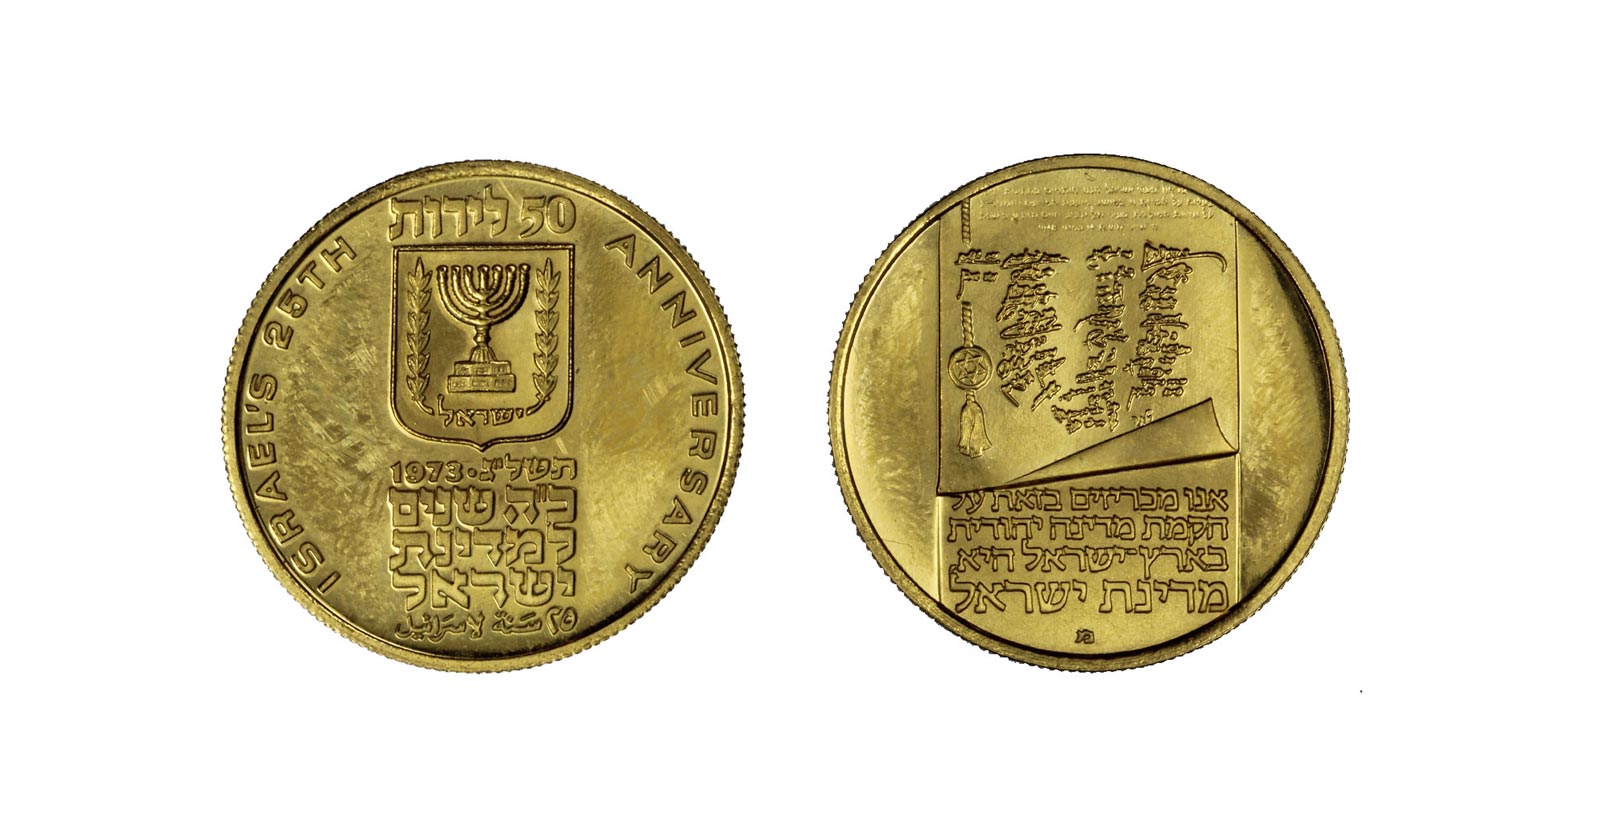 25 anniversario dell'Indipendenza - 50 sterline gr. 7,00 in oro 900/000